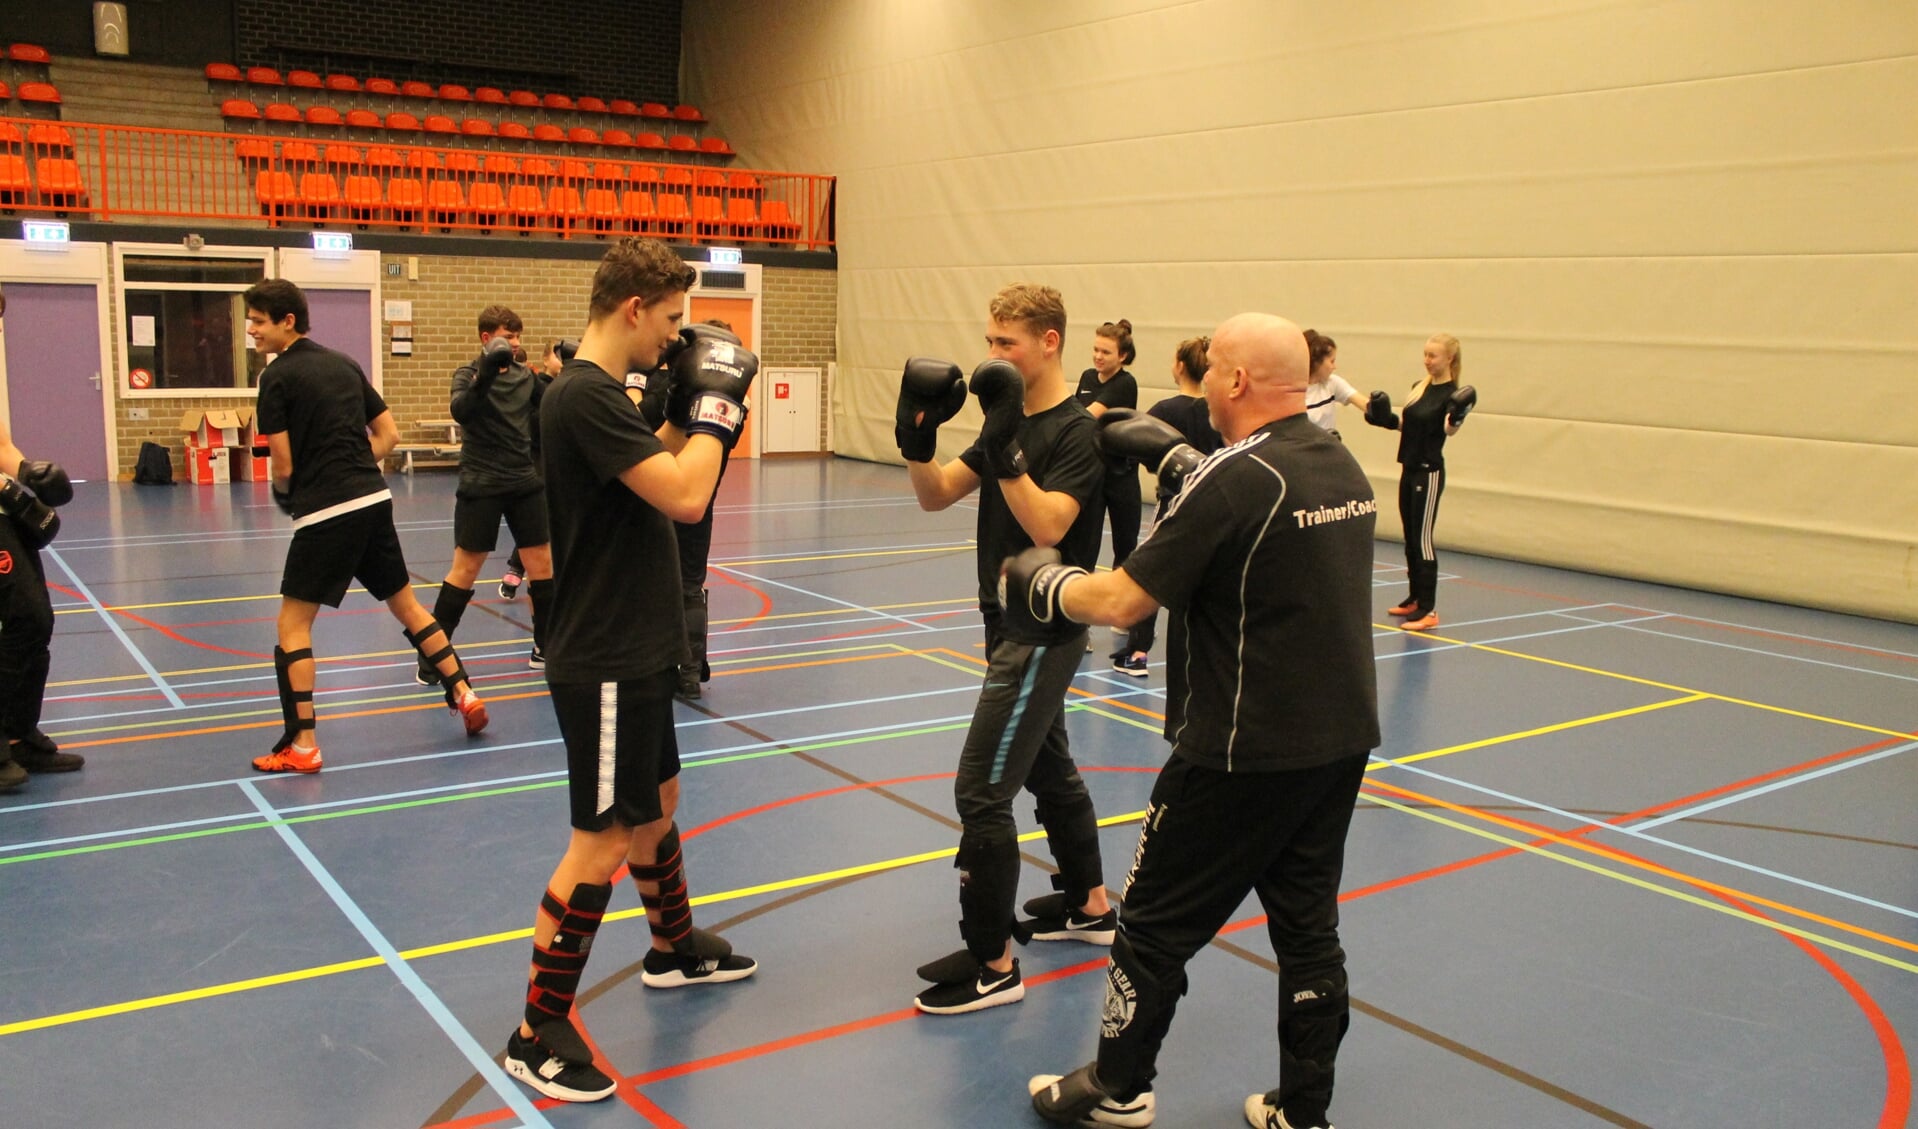 Kickboksen op 't Assink. Foto: PR